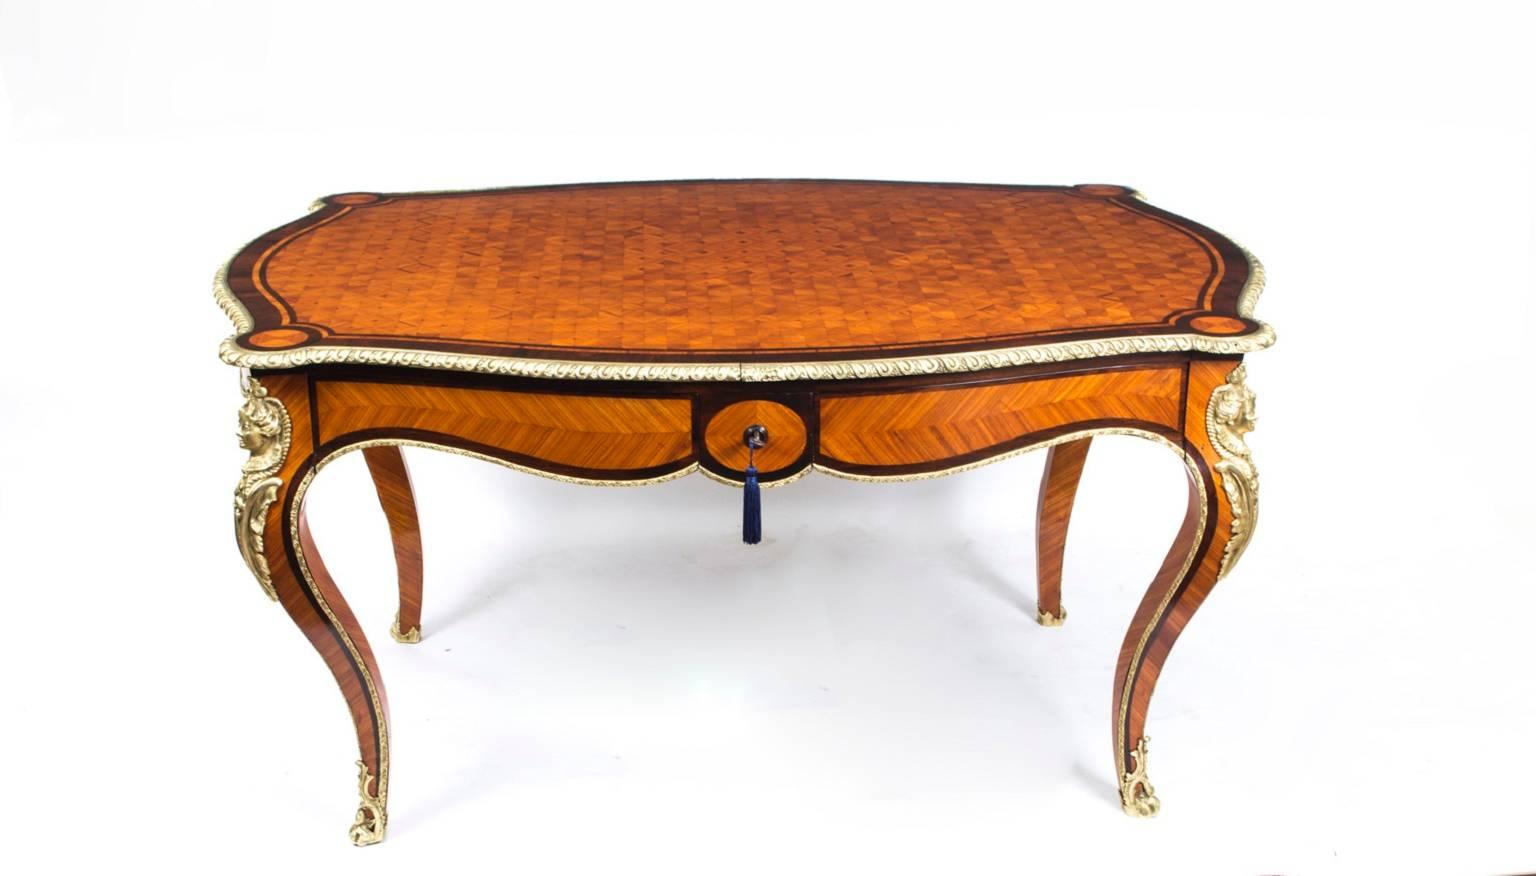 Il s'agit d'une ancienne table à écrire en parquet de fabrication française datant d'environ 1860.

Nous avons le plaisir de vous proposer à la vente ce très beau bureau plat ancien en parquet monté en bronze doré, également connu sous le nom de